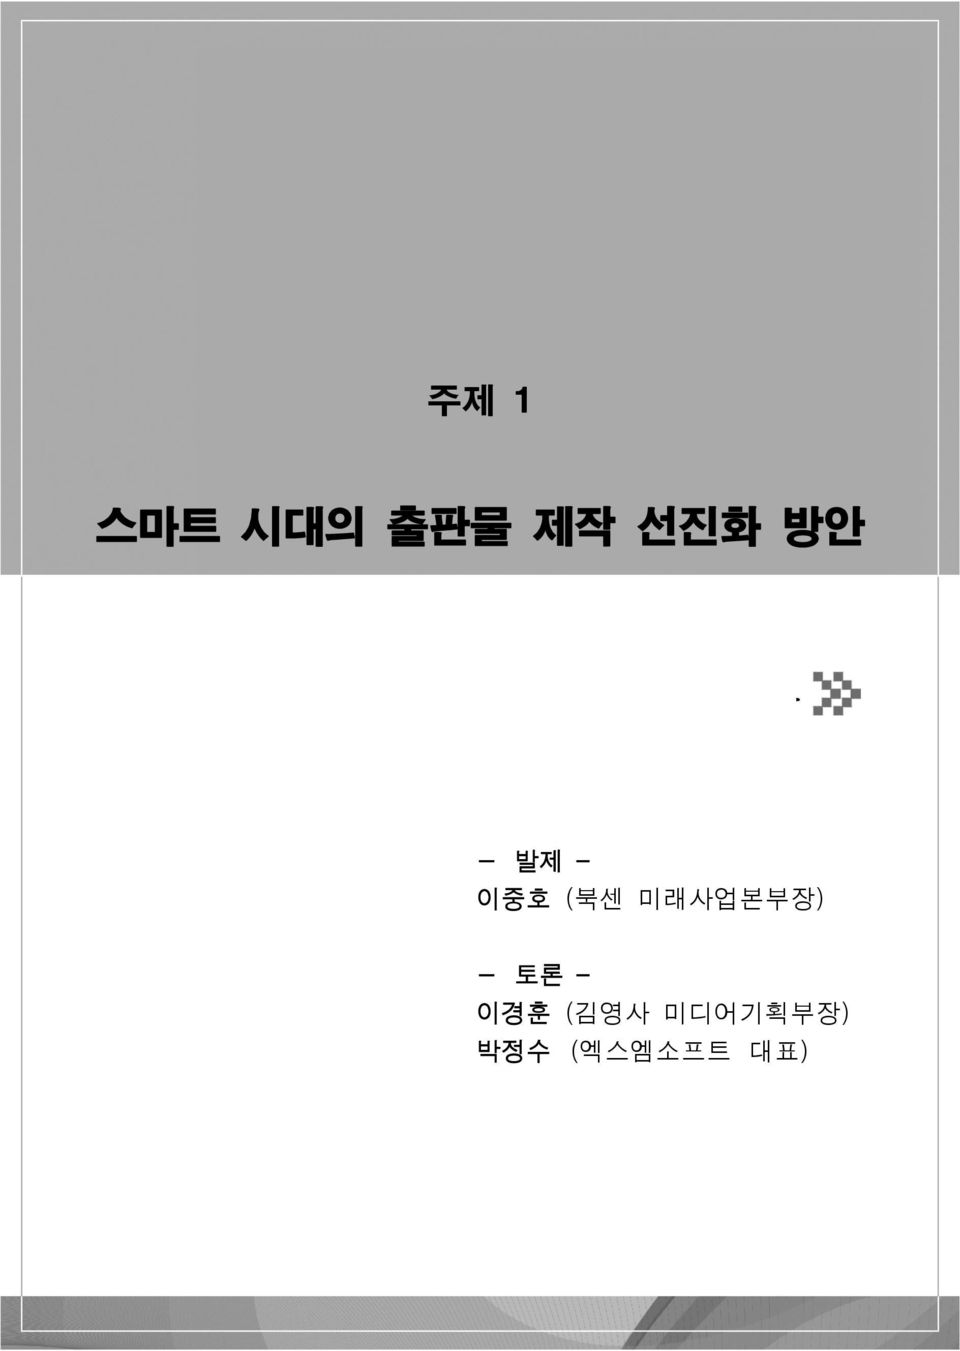 미래사업본부장) - 토론 이경훈 (김영사